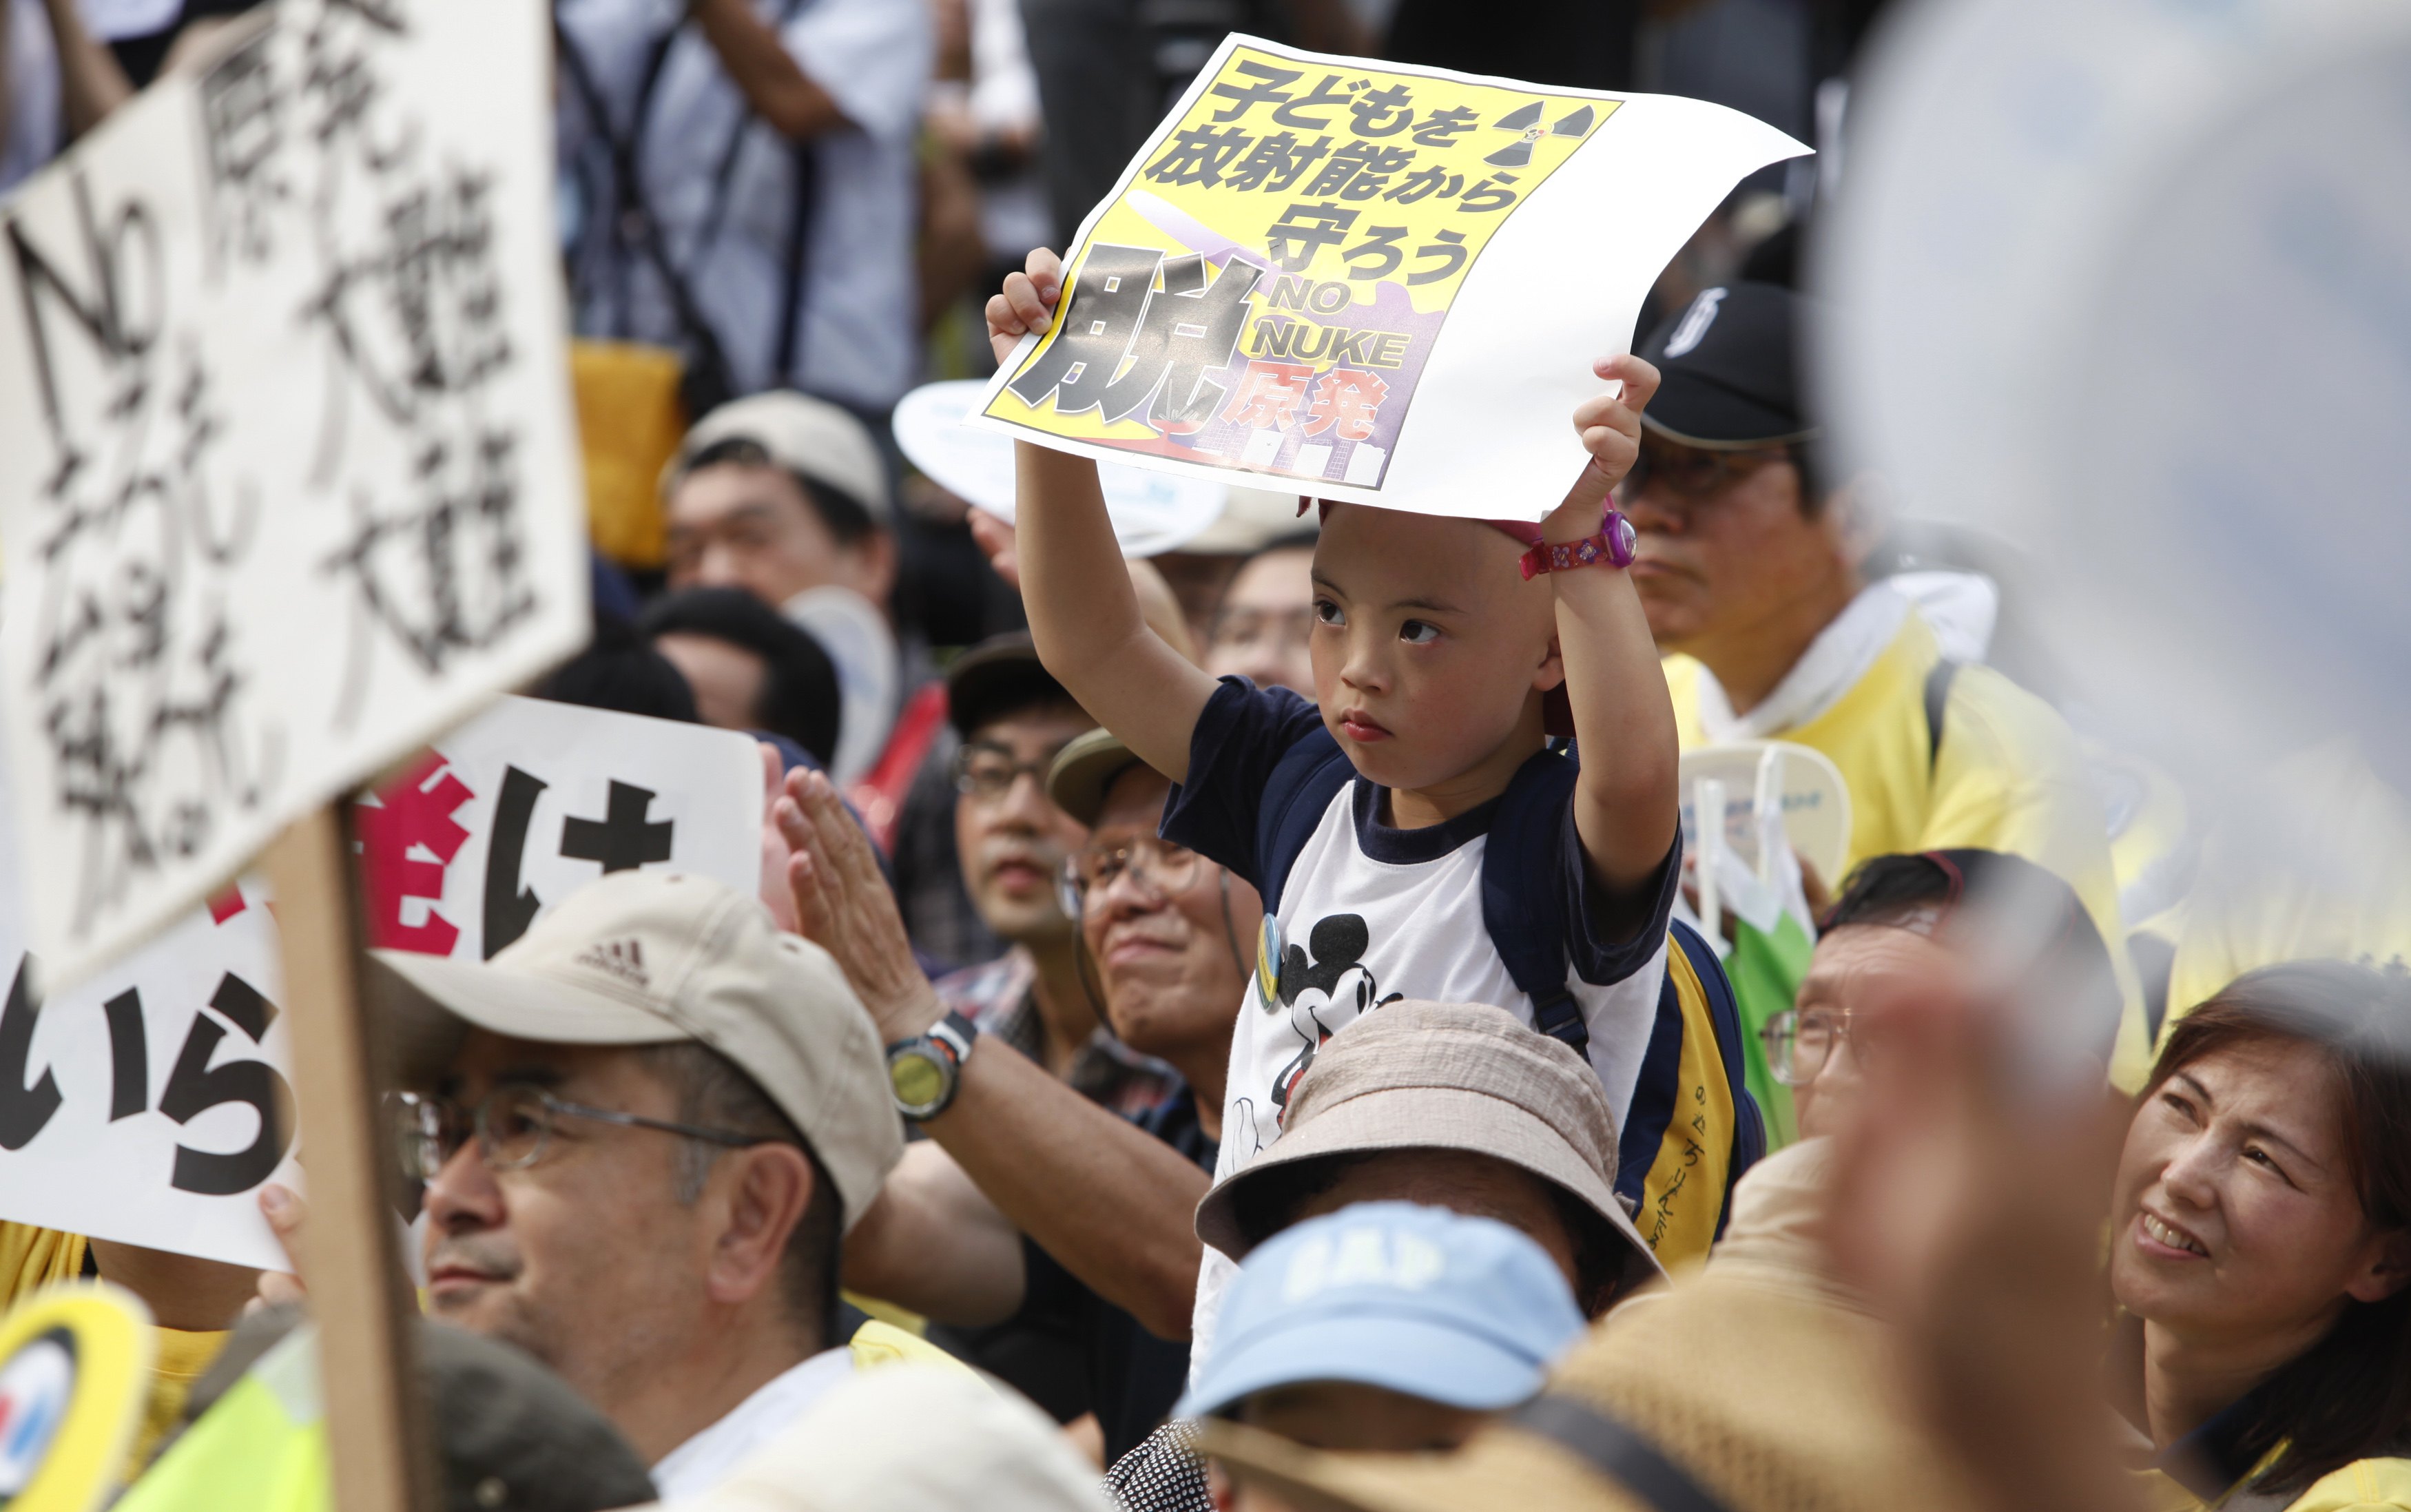 Διαδήλωση για τη ραδιενέργεια στο Τόκιο